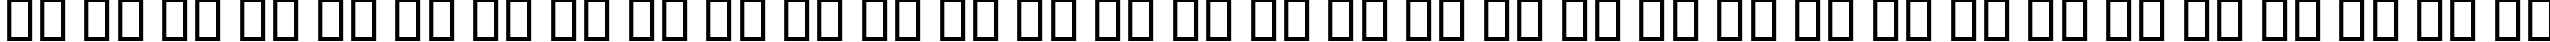 Пример написания русского алфавита шрифтом B Mah